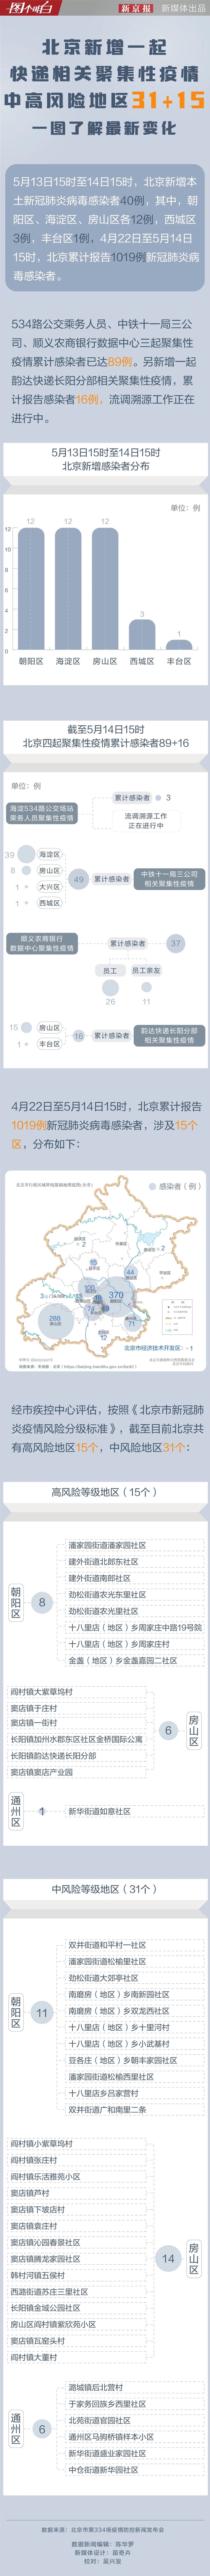 北京中高风险地区31+15，一图了解最新变化 (http://www.szcoop.com.cn/) 国内 第1张